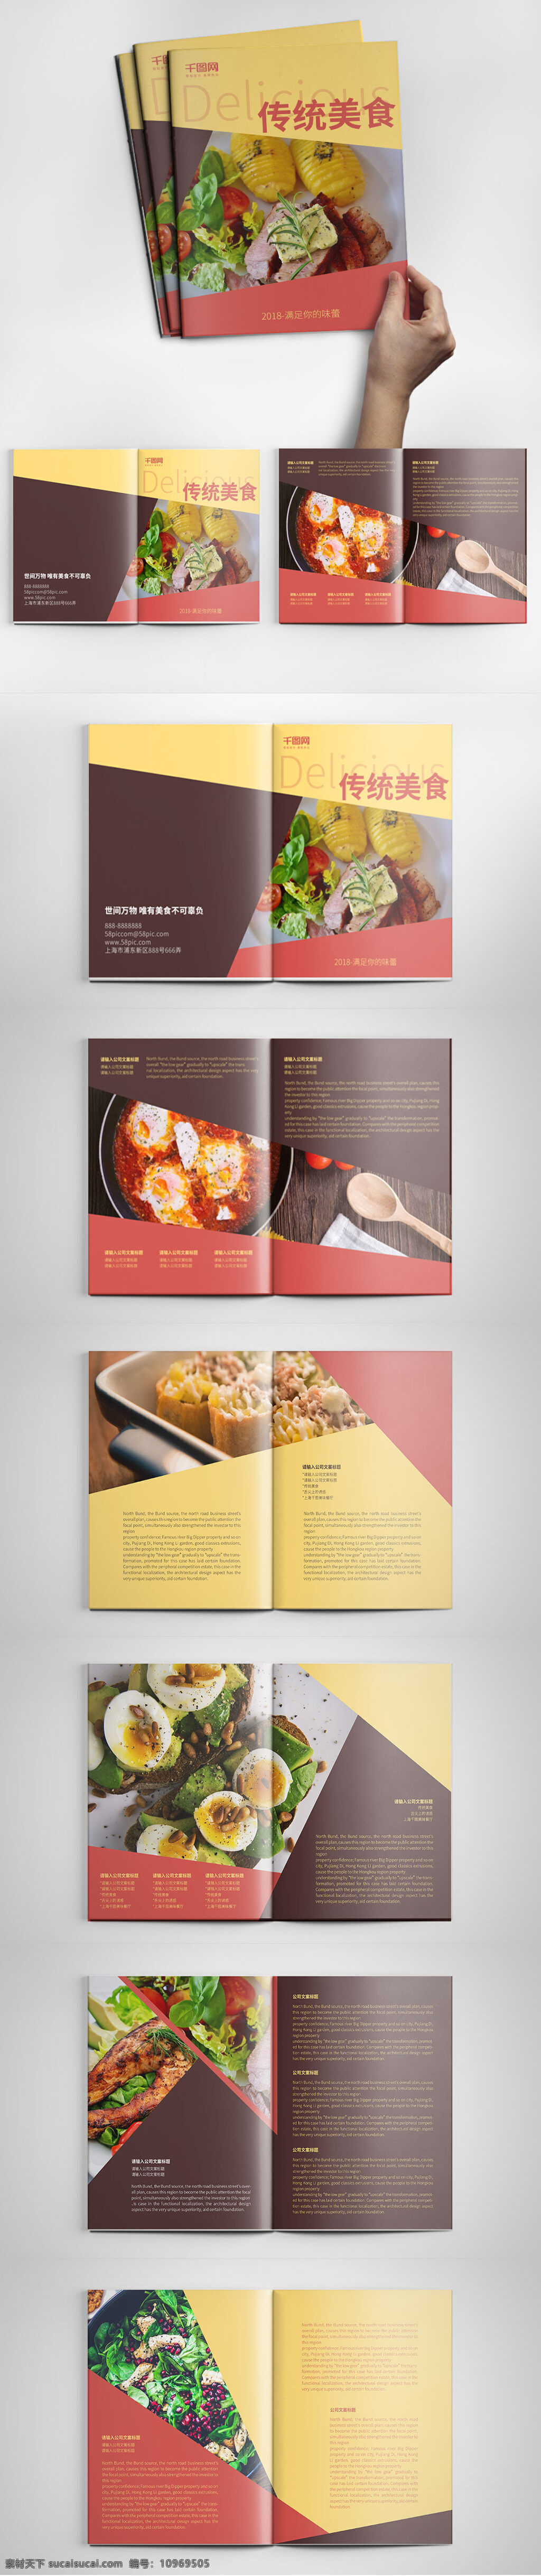 高档 餐饮 传统 美食 画册设计 模板 餐厅画册 餐饮画册 传统美食 高档画册模板 美食画册 宣传画册